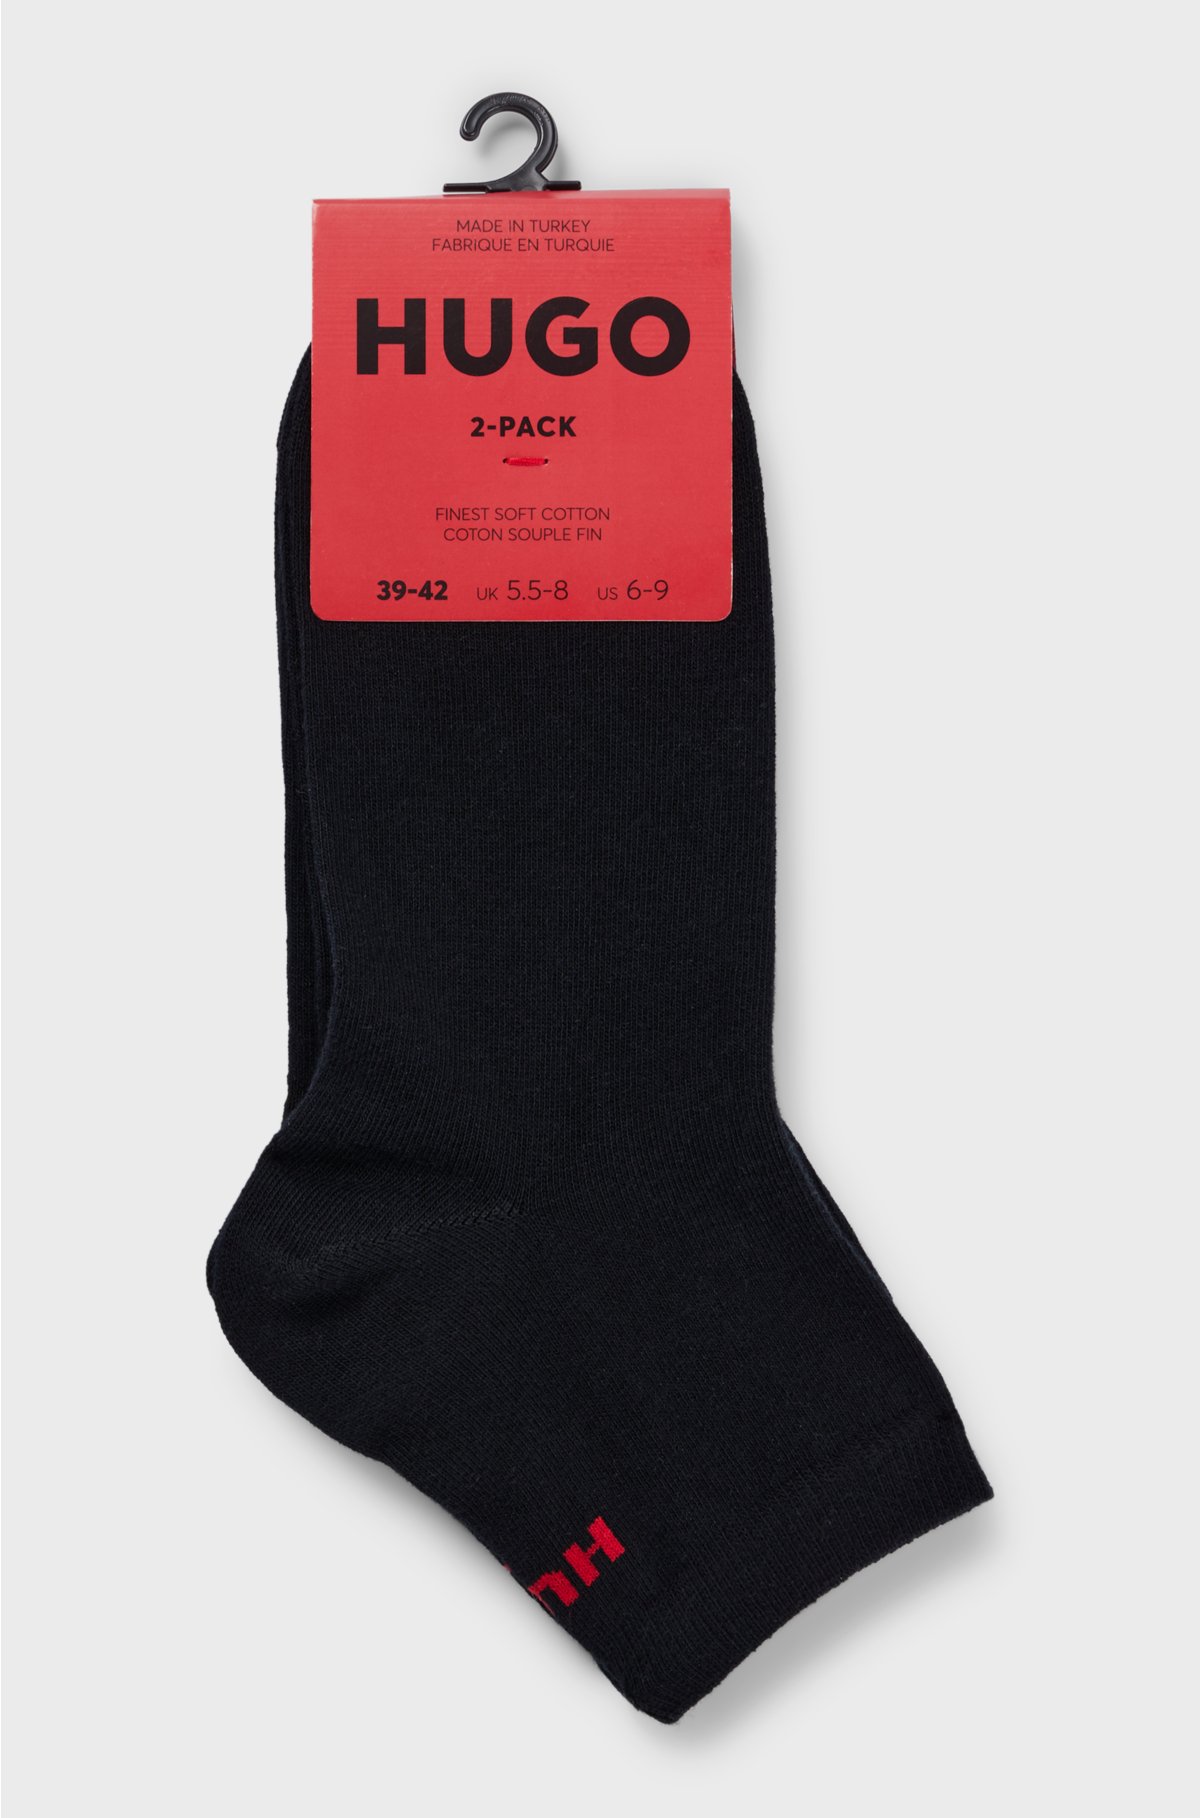 Two-pack of short-length logo socks, Black